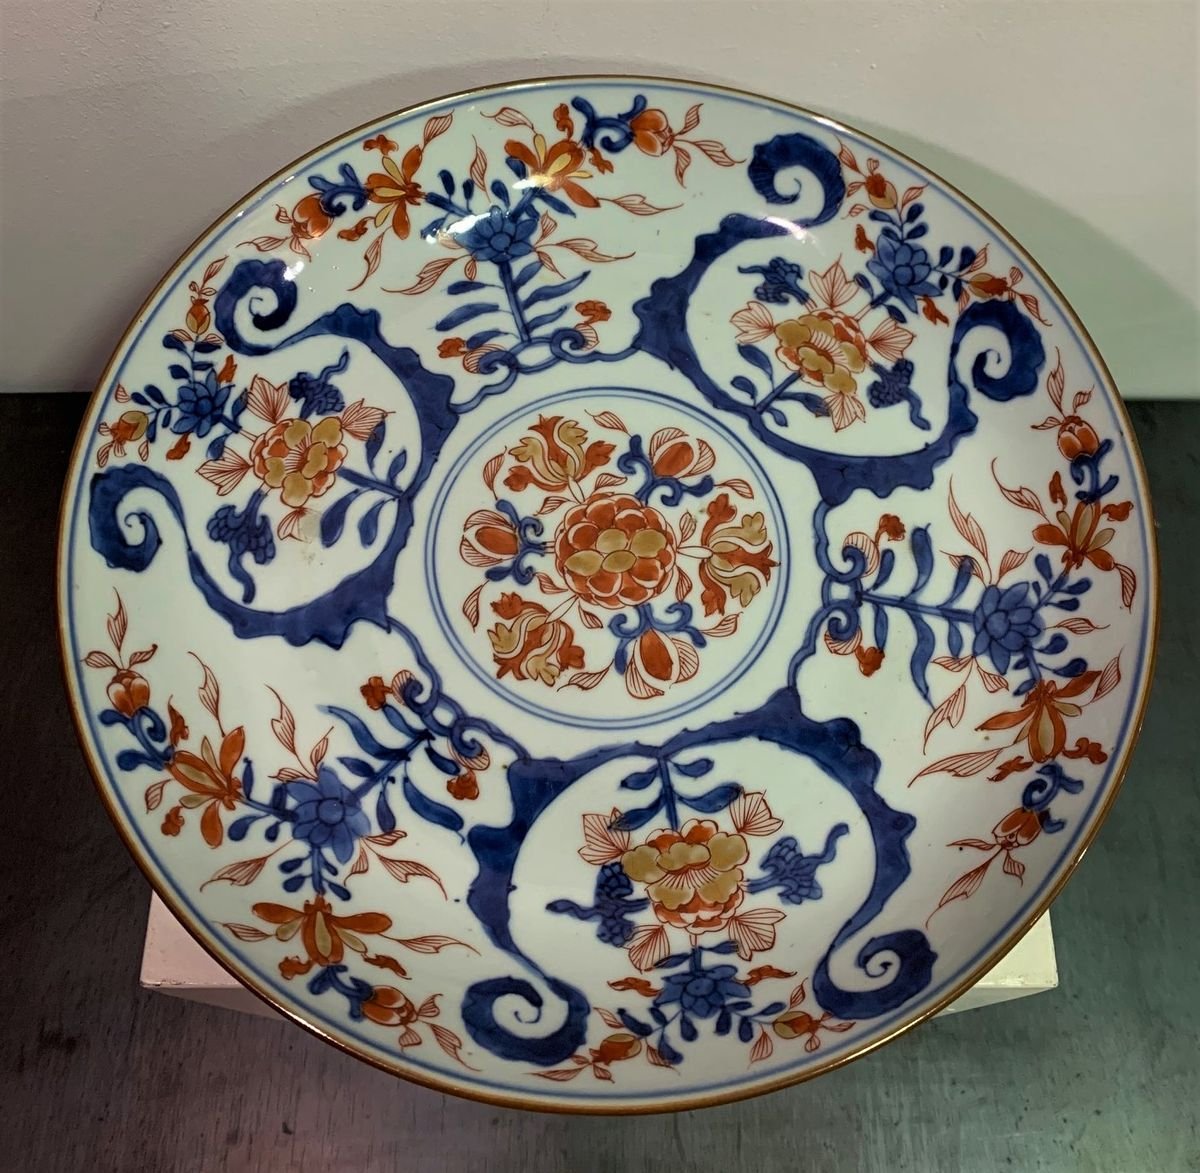 \u4e2d\u56fd\u4f0a\u7281\u74f7\u5668 . Free shipping Antique chinese porcelain plate 18th century antique imari landscape plate \u4e2d\u56fd\u8336\u7897 18th century China Imari plate